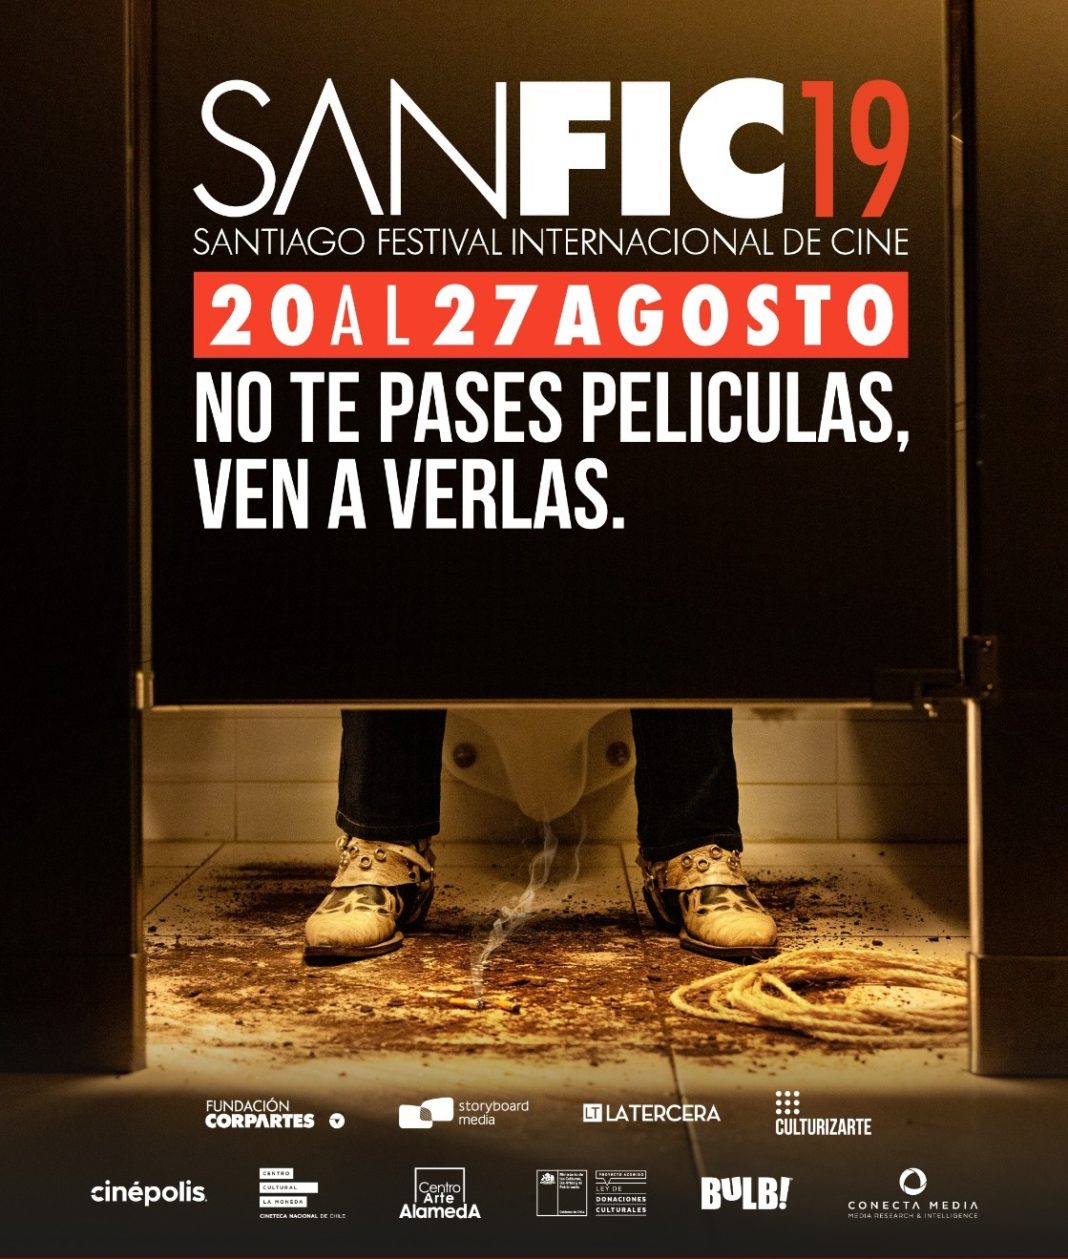 ¡No te pierdas el Festival Internacional de Cine de Santiago! Compra tus entradas para SANFIC19 ahora